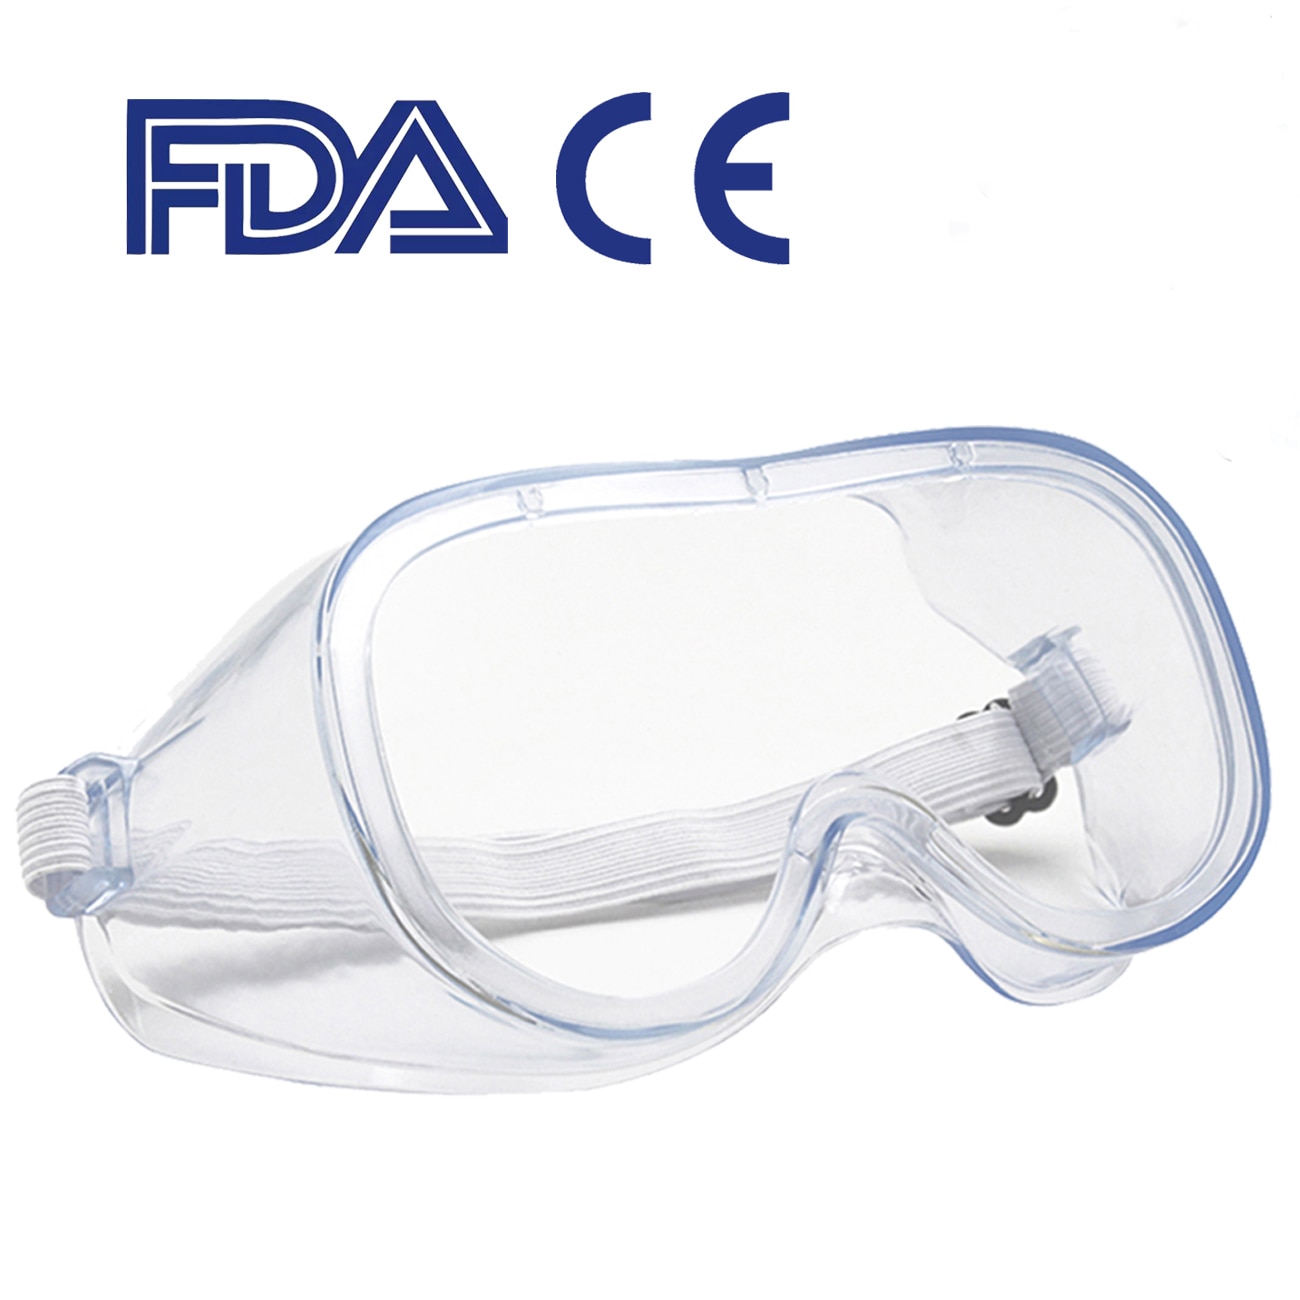 Bescherming Veiligheidsbril Transparant Anit-Splash Stofdicht Zand Werk Lab Dental Eyewear Bril Veiligheid Beschermende Bril